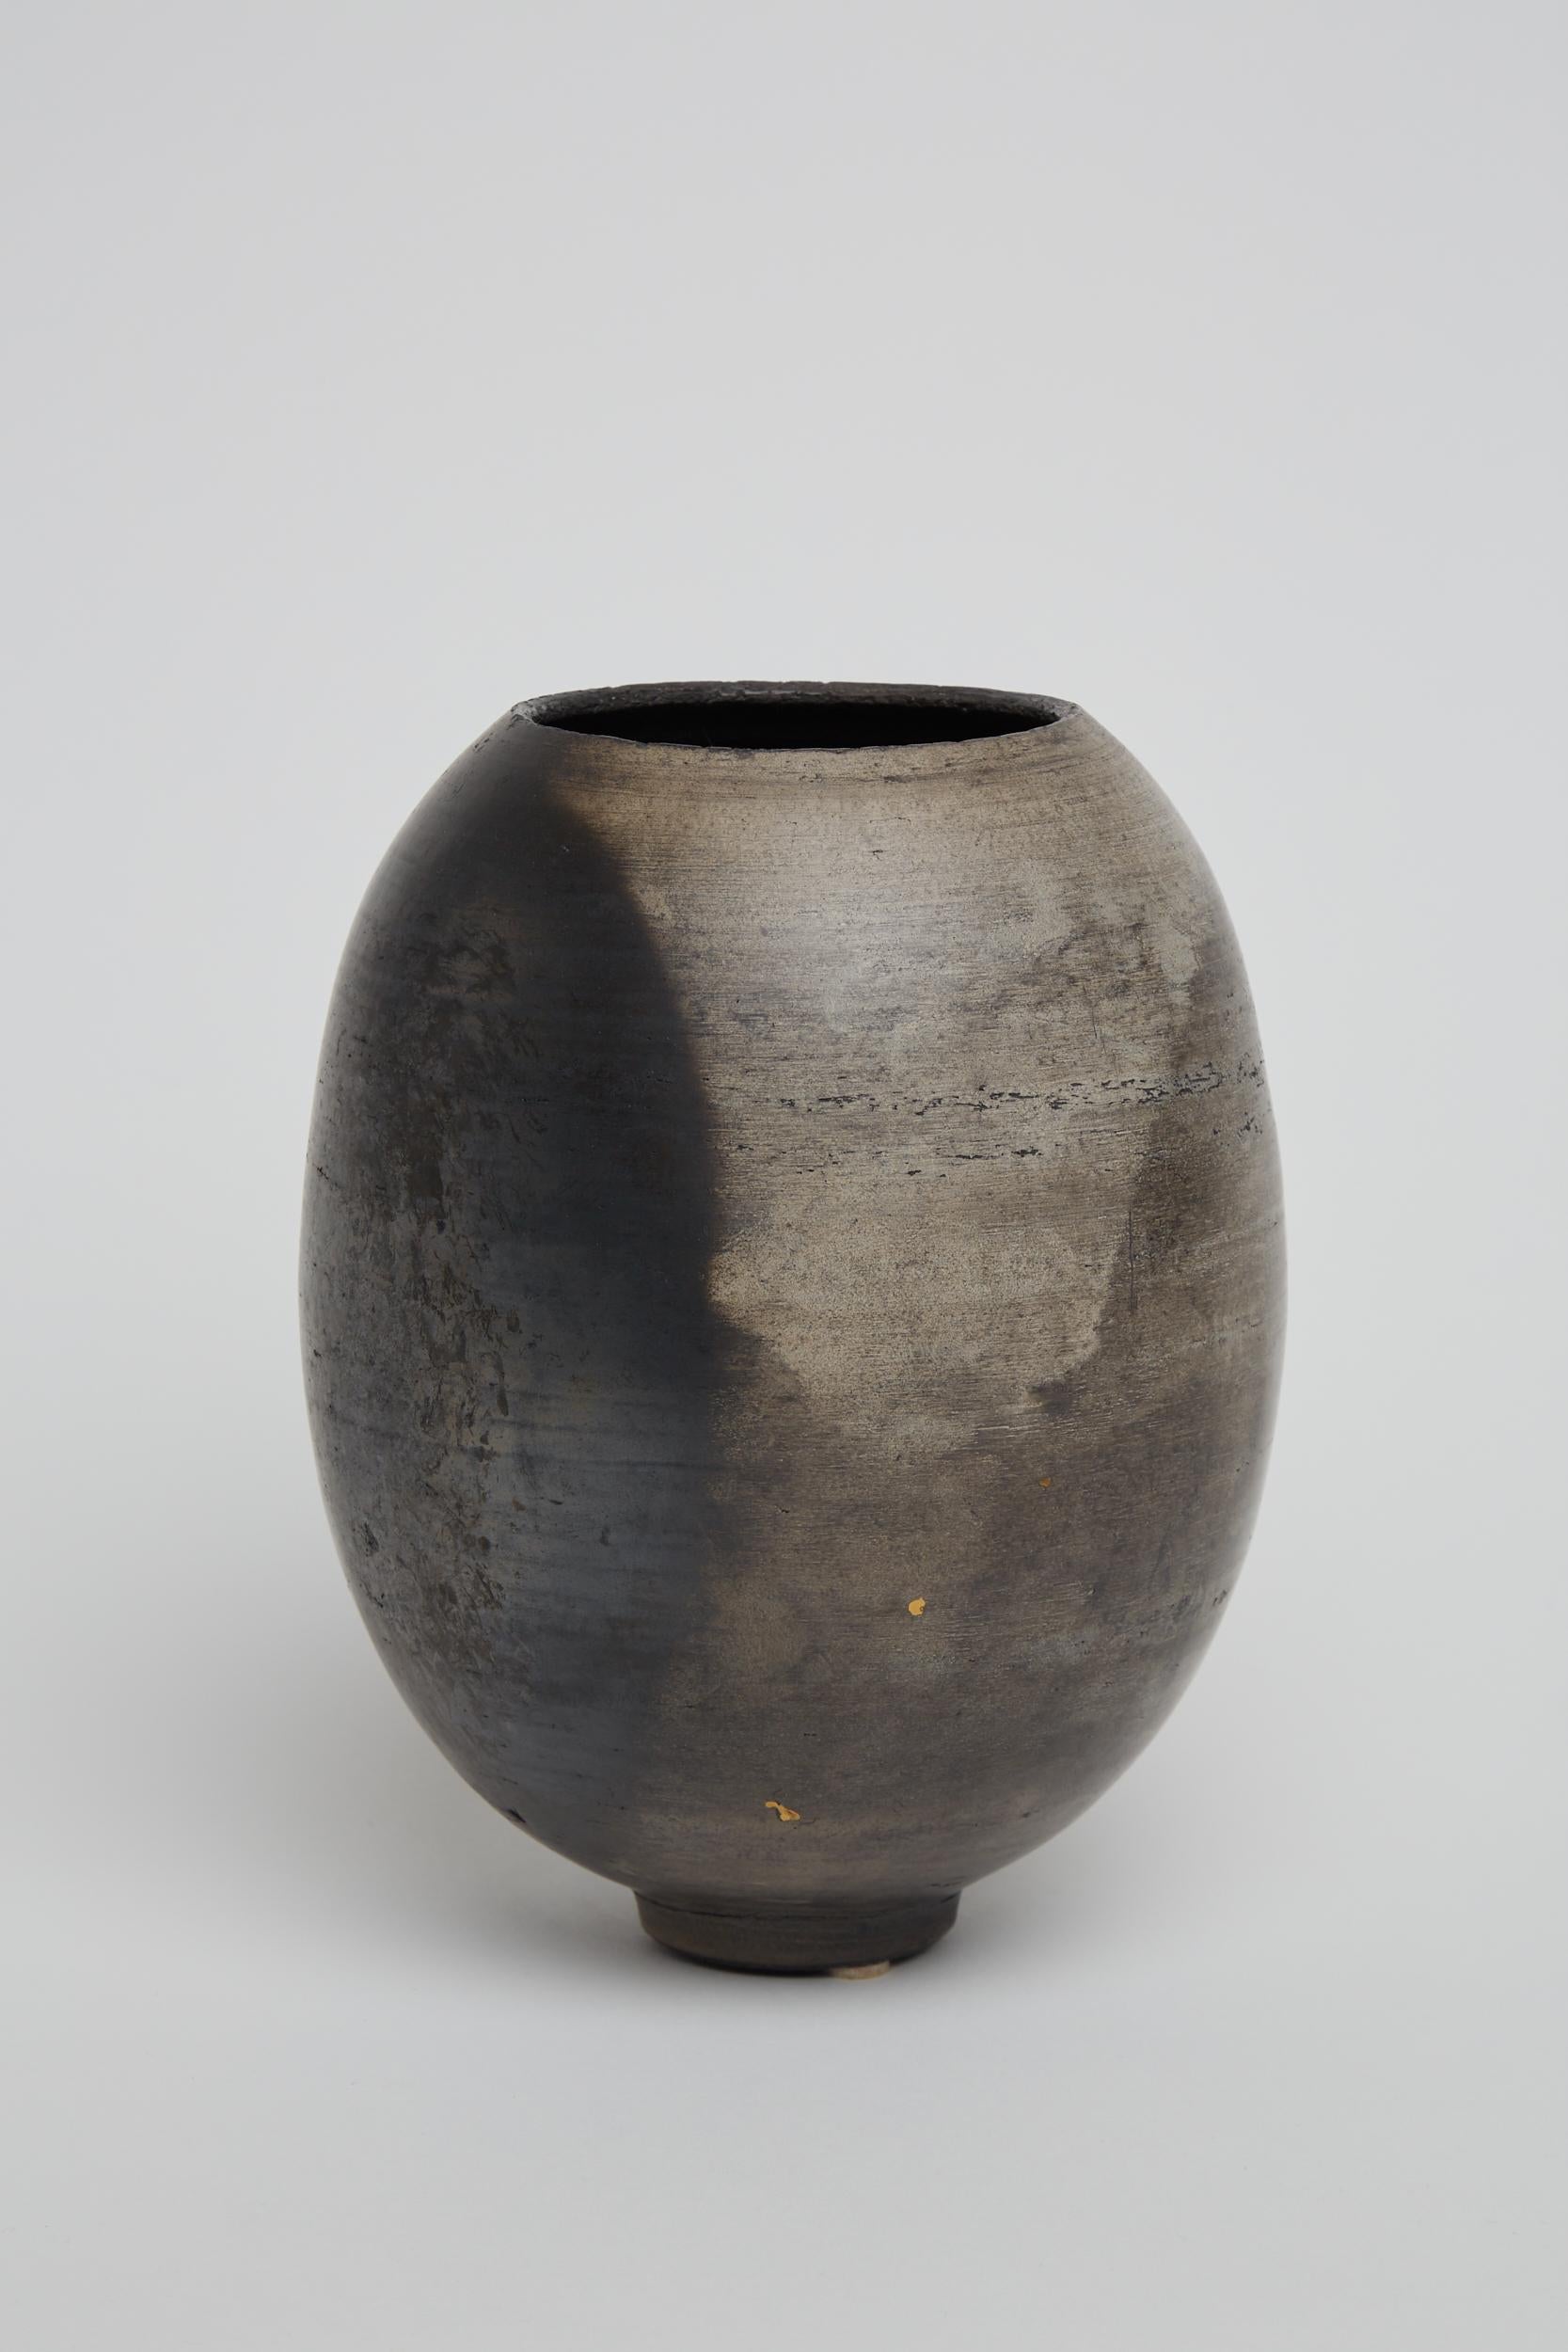 French Unique Vase by Karen Swami, 2021